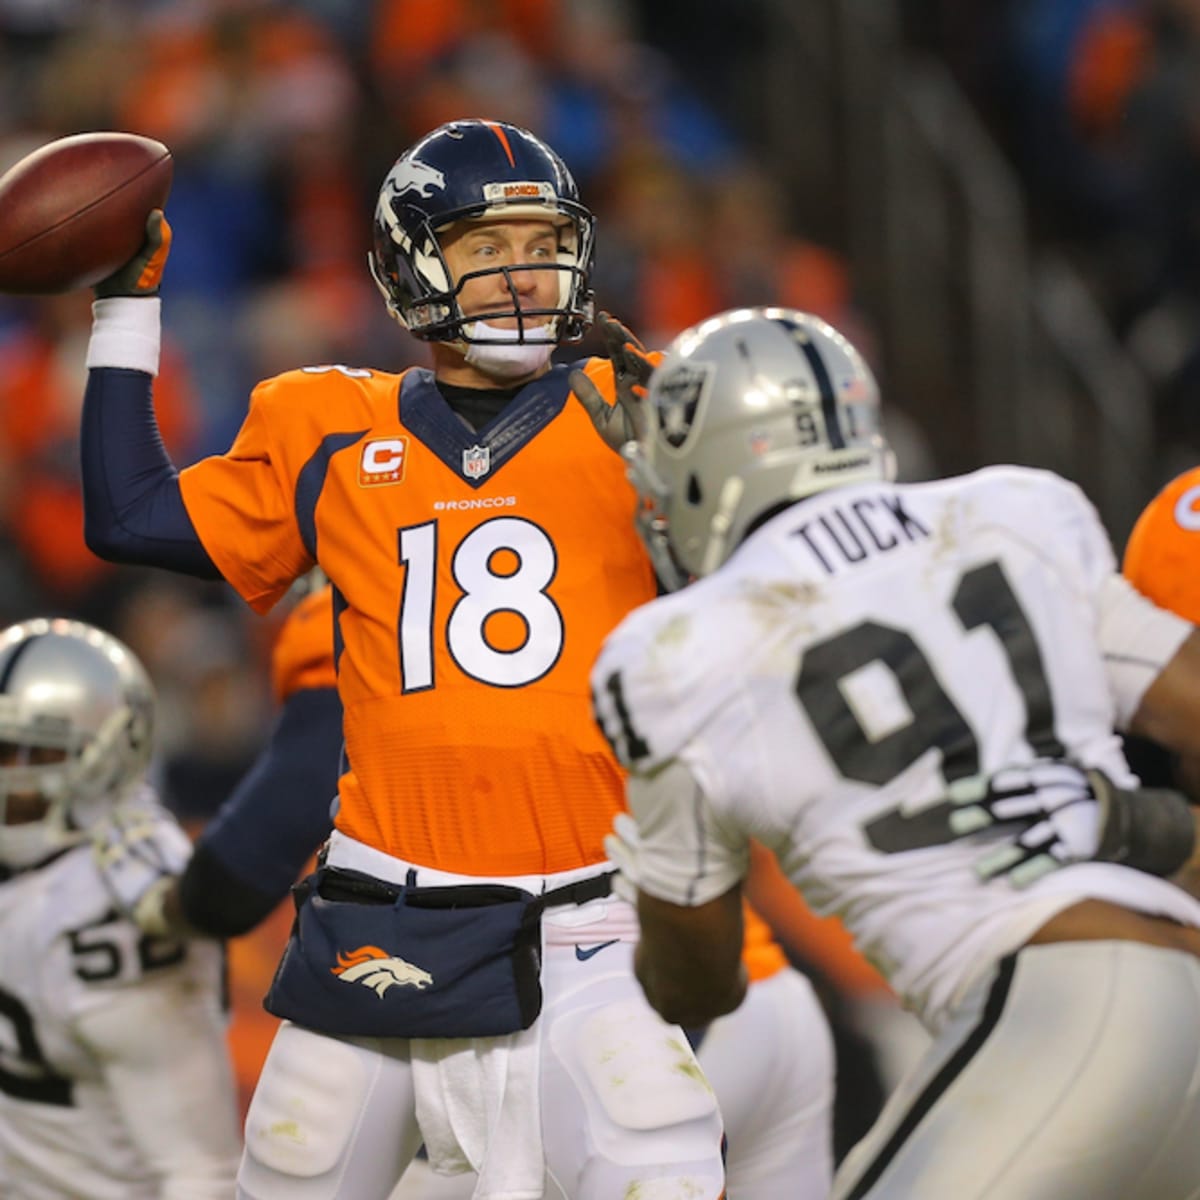 Mashup Peyton Manning jerseys invading Indianapolis - Sports Illustrated